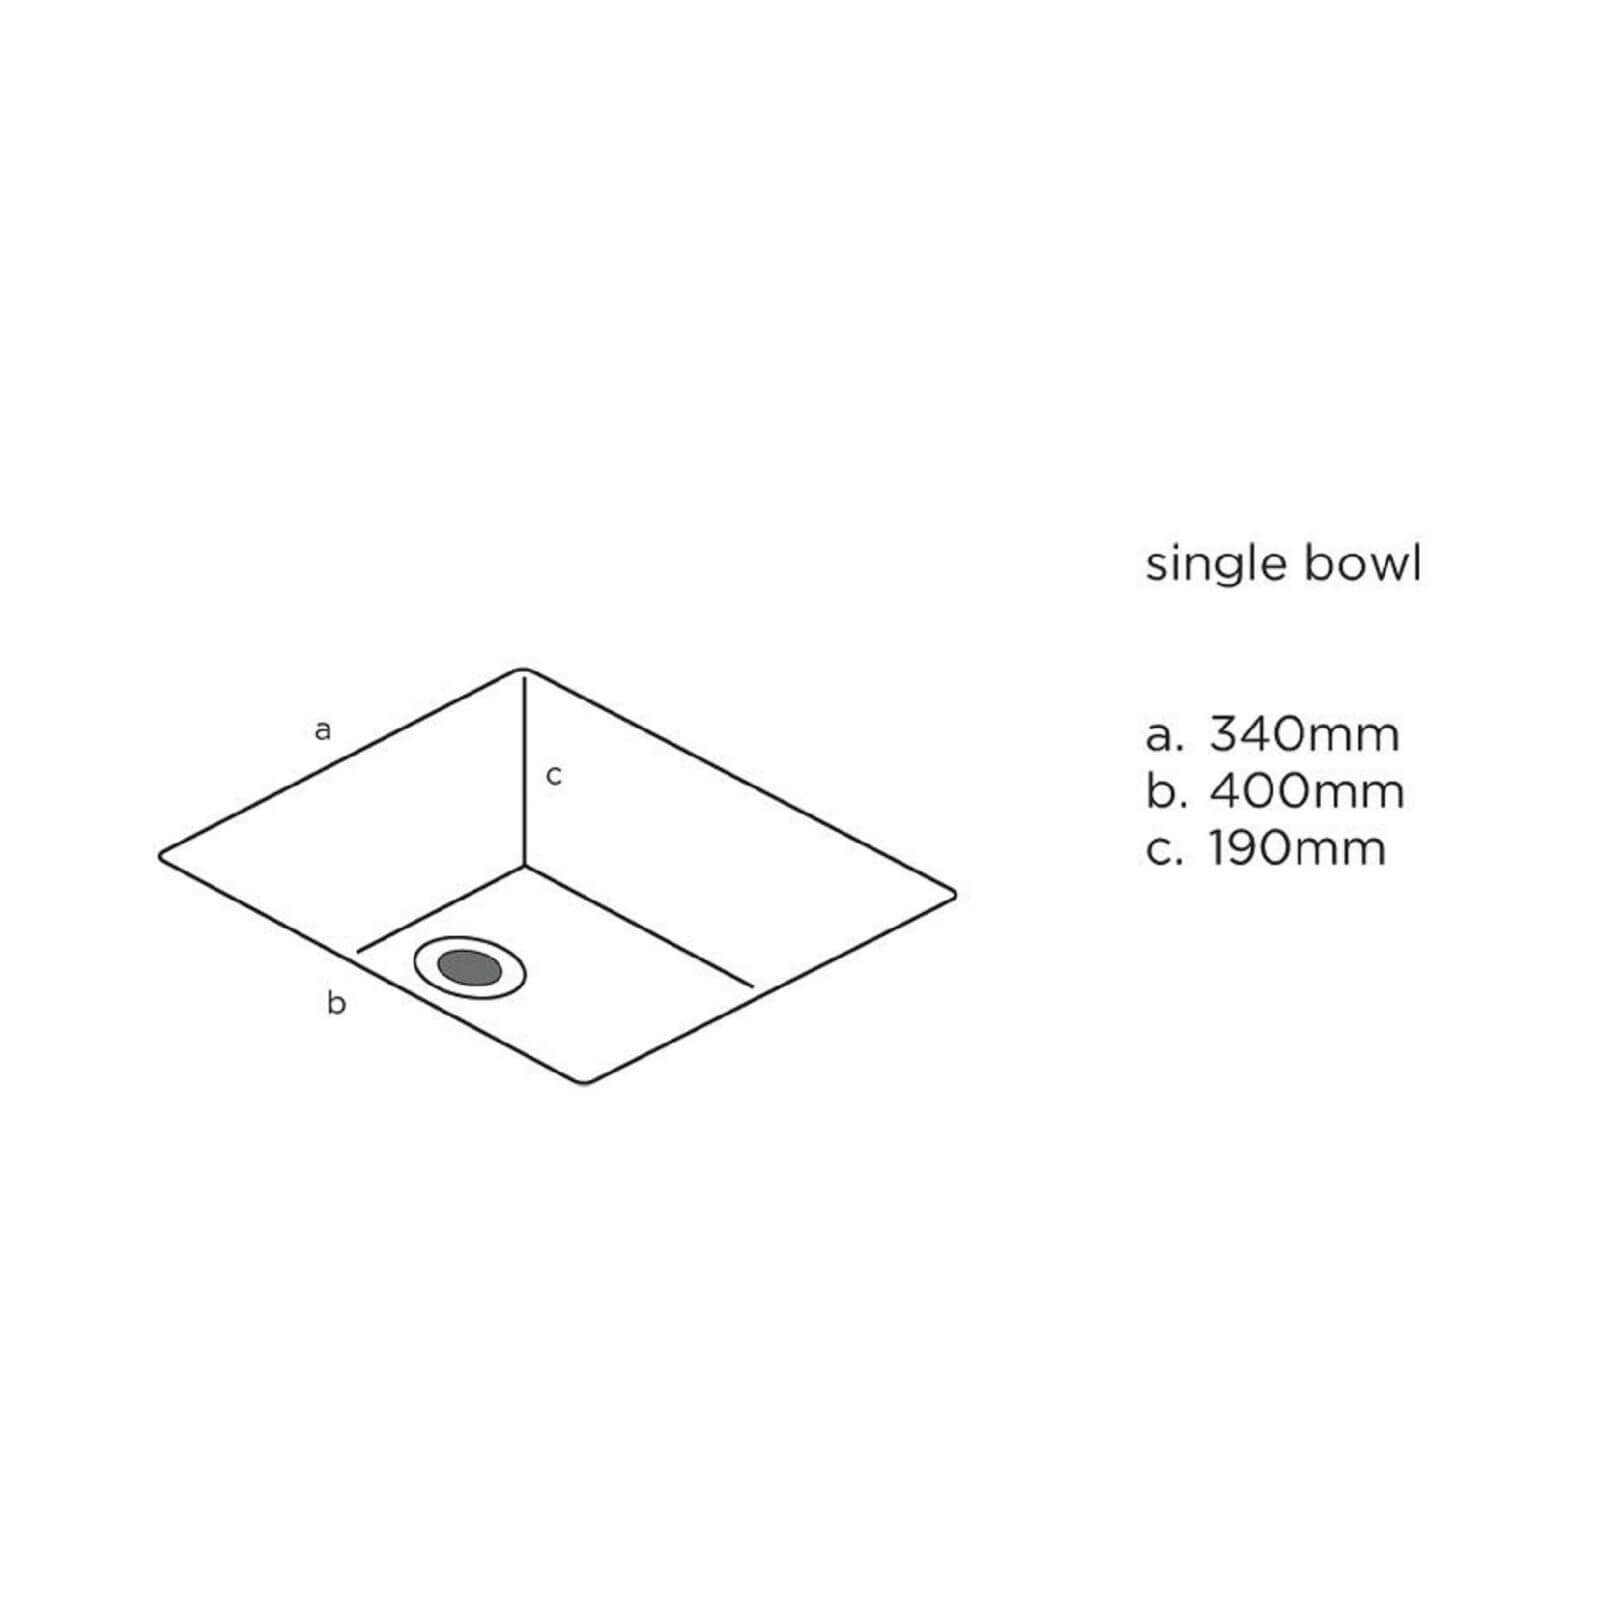 Maia Vulcano Kitchen Sink Worktop - Universal Bowl - 1800 x 600 x 28mm